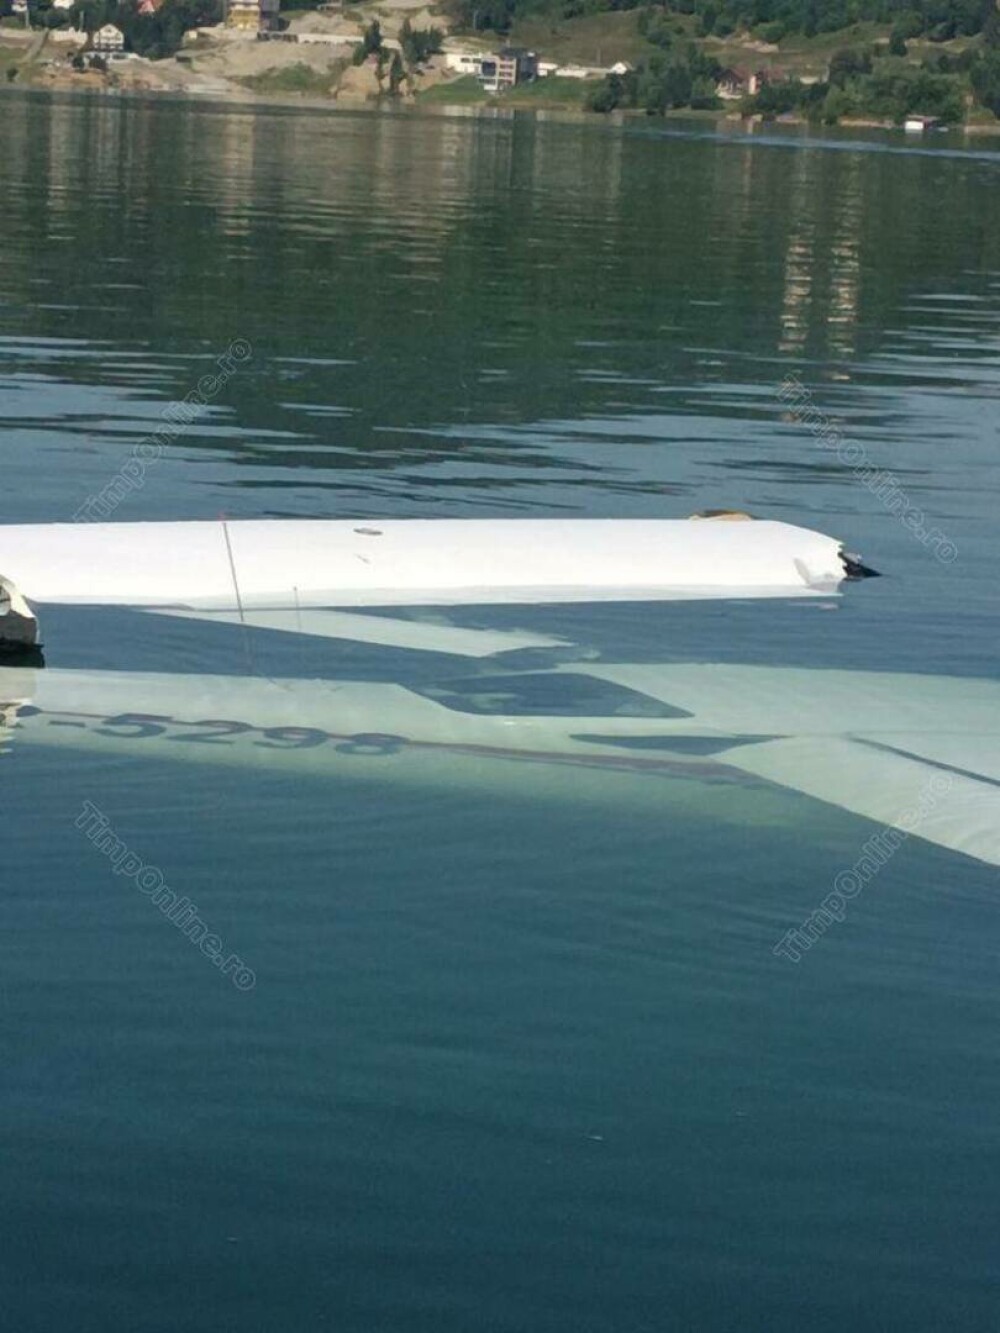 Încă un accident aviatic în România. Un avion ușor s-a prăbușit în lacul Colibița. Pilotul a murit | FOTO - Imaginea 3